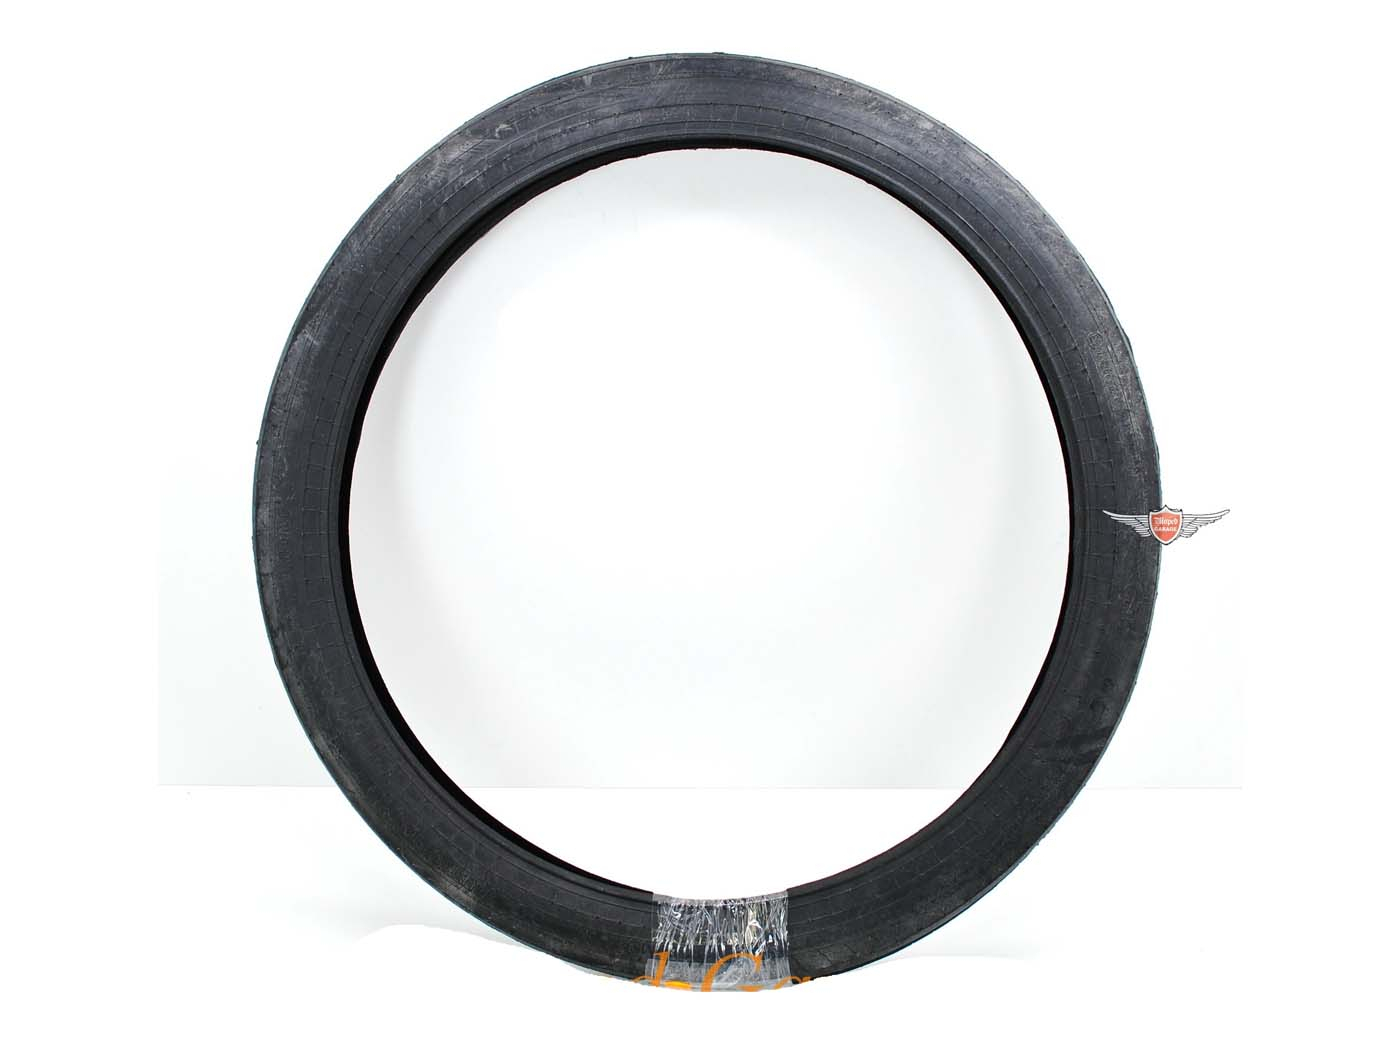 Tires Hutchinson 1 3/4 X 19 Inch For Velosolex